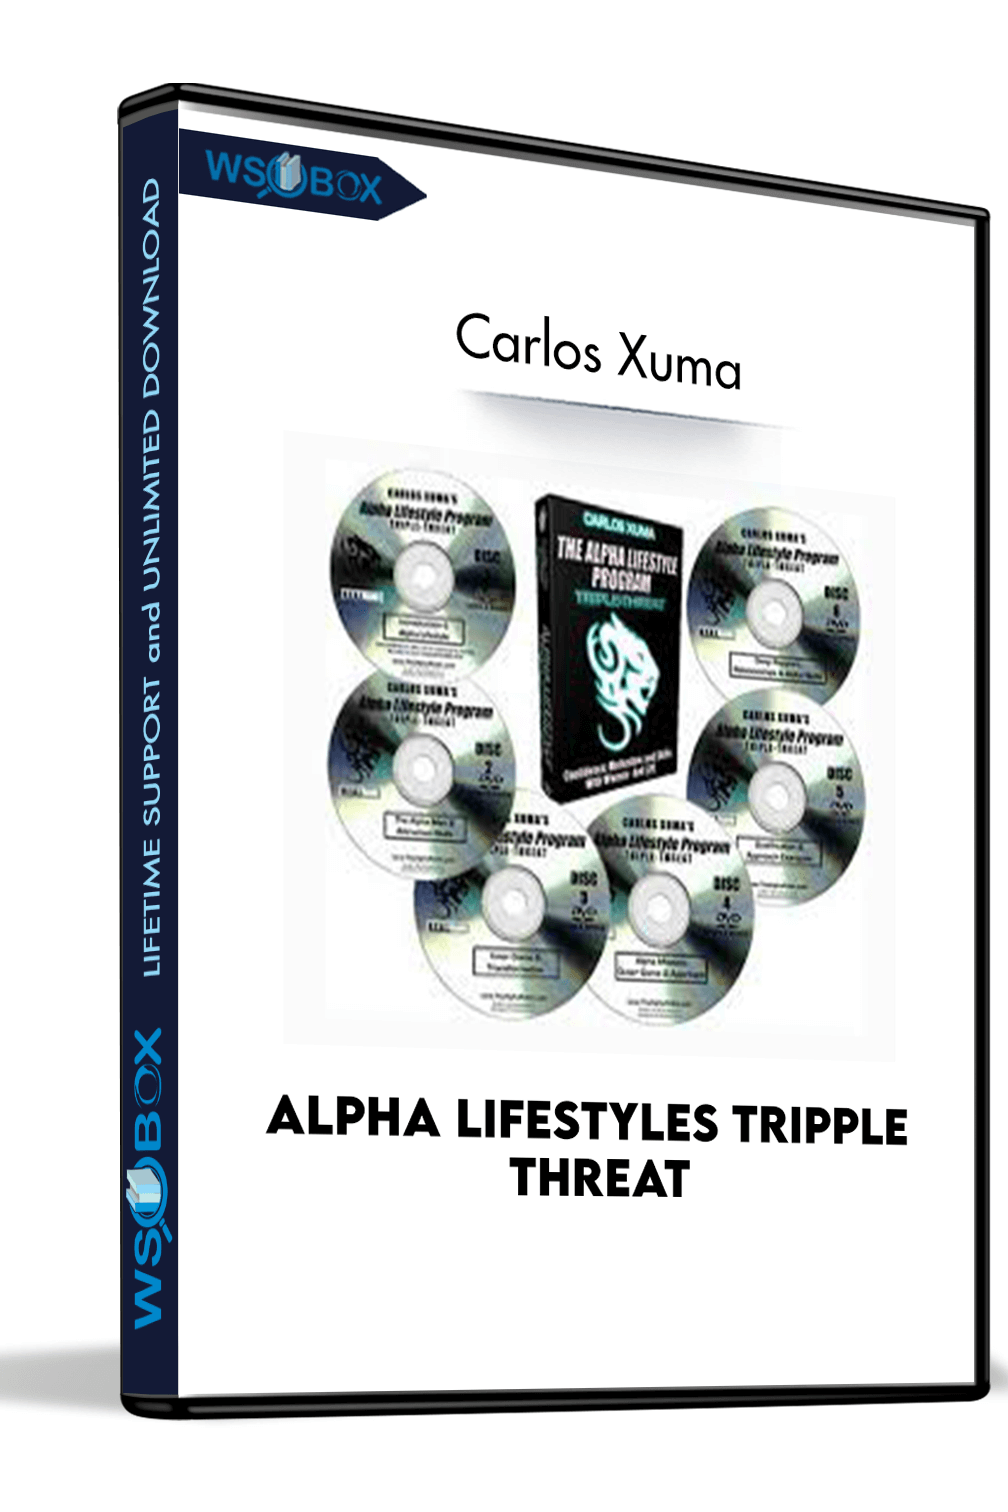 alpha-lifestyles-tripple-threat-carlos-xuma